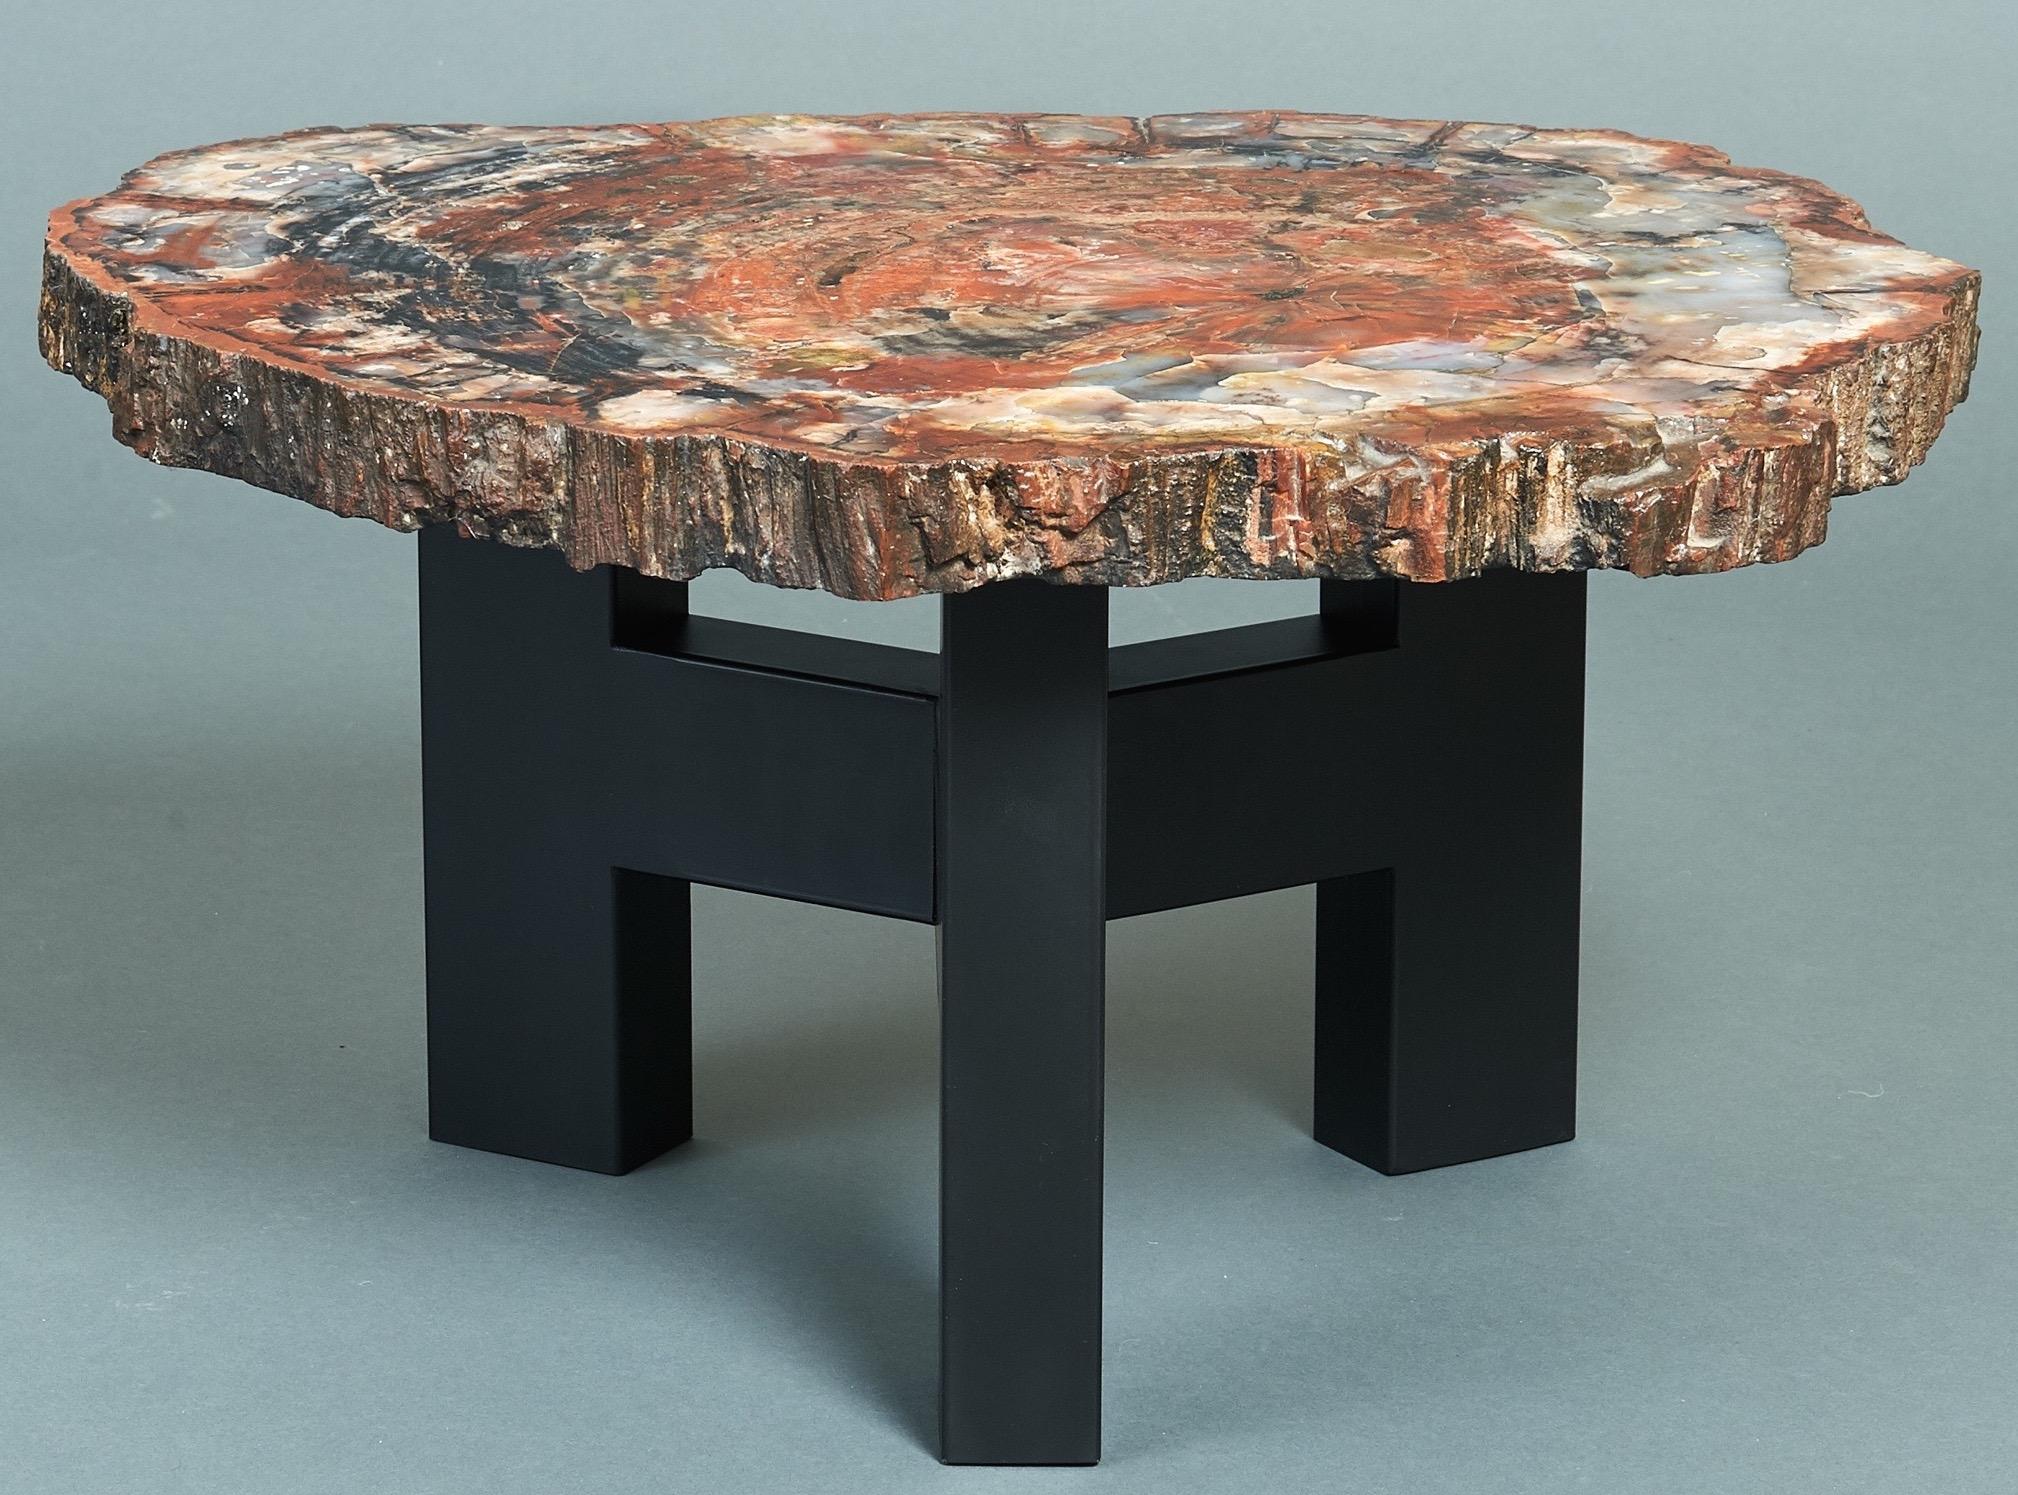 Ado Chale (né en 1928)

Une table basse organique précoce et exceptionnelle d'Ado Chale. La base tripode emblématique de Steele, en acier émaillé, supporte une section transversale étincelante de séquoia pétrifié de l'Arizona, datant de quelque